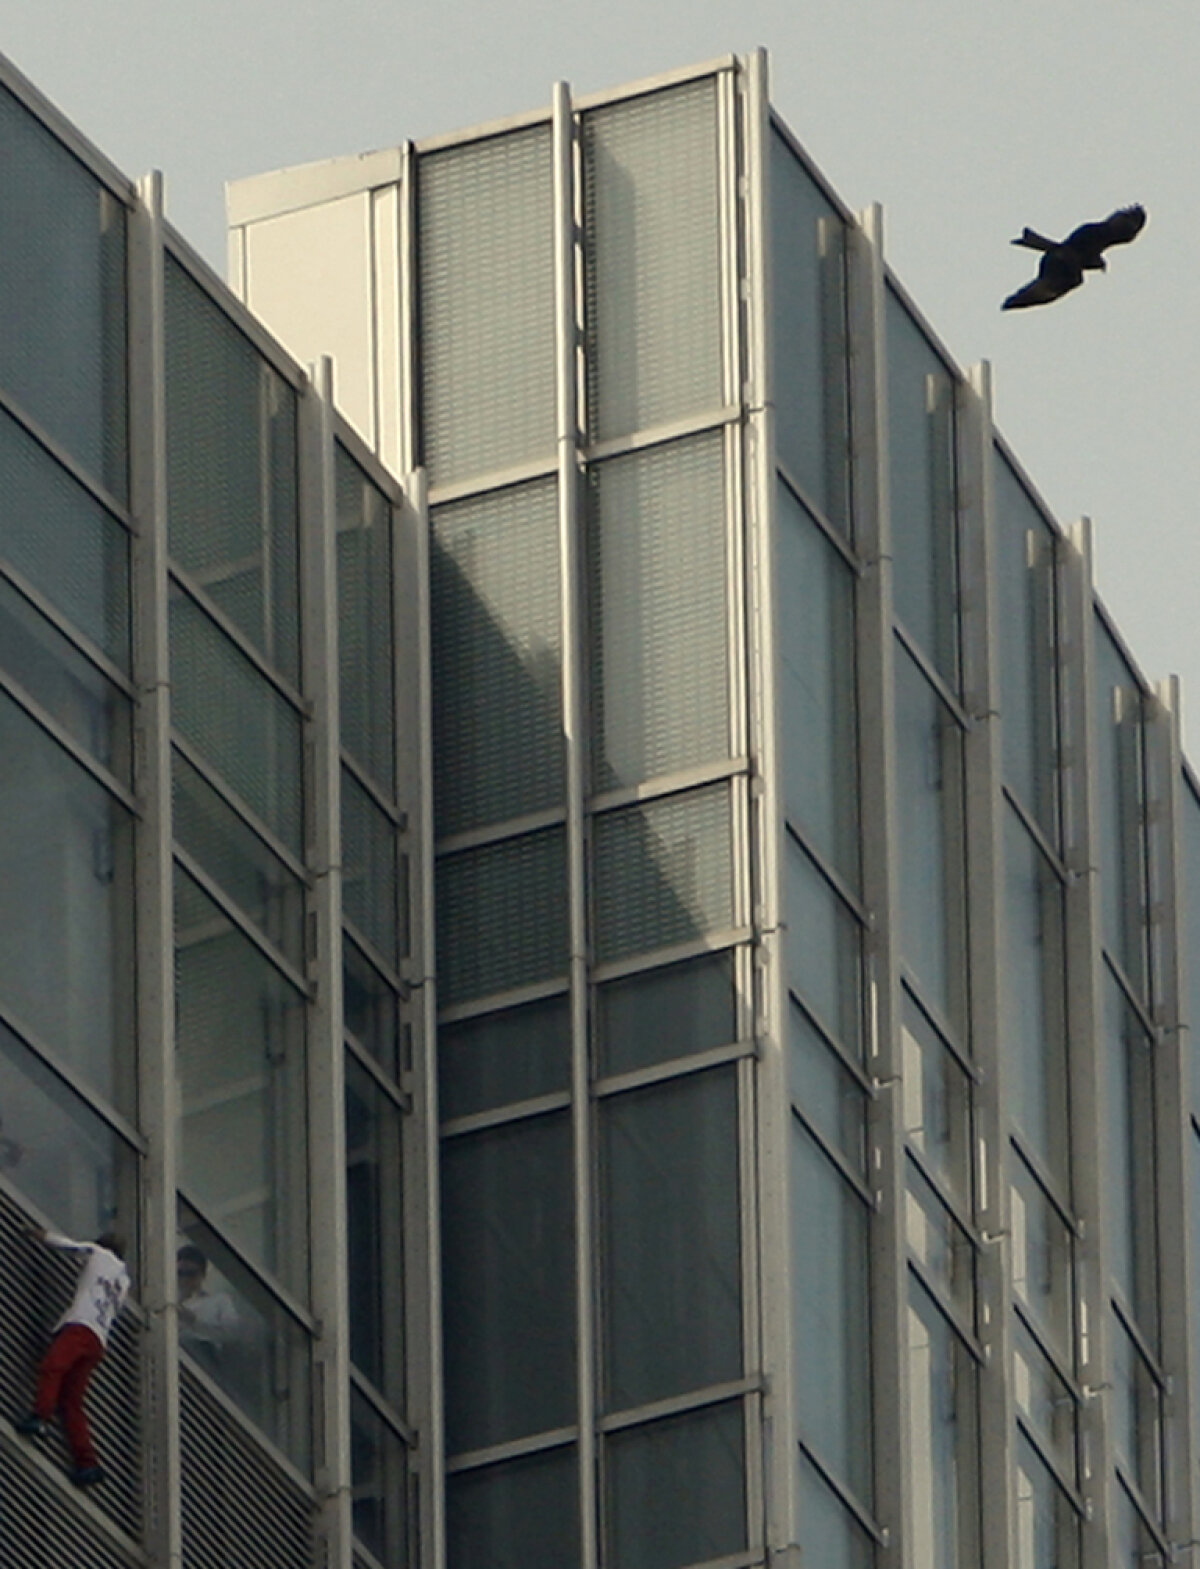 Incredibil chiar şi pentru "Spiderman". Alain Robert a escaladat hotelul Intercontinental în doar 15 minute!